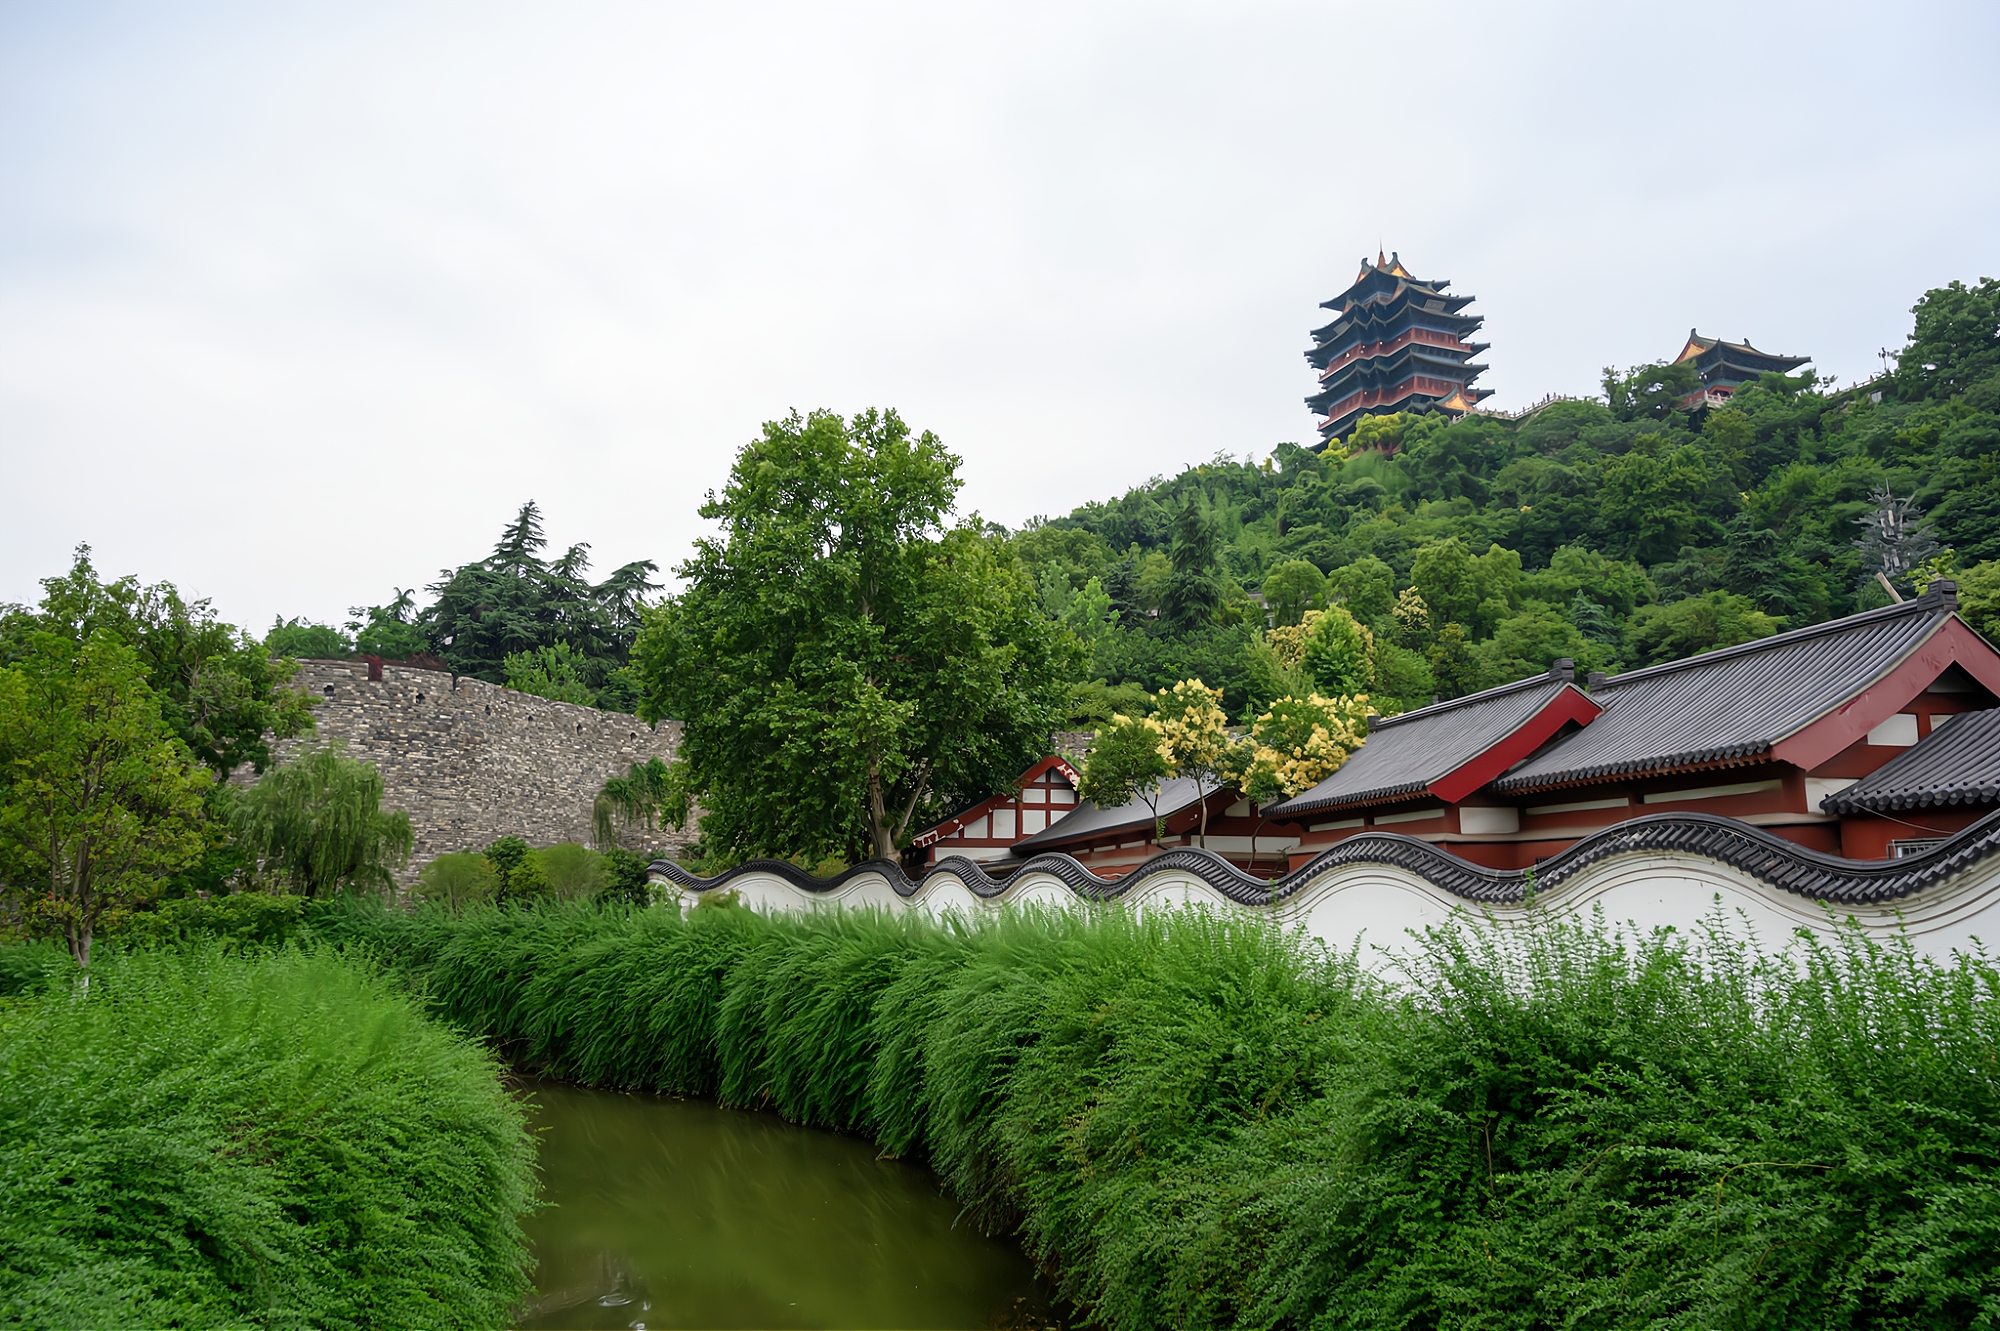 原创南京值得一去的小众景点曾有金陵律寺之冠的美誉门票免费